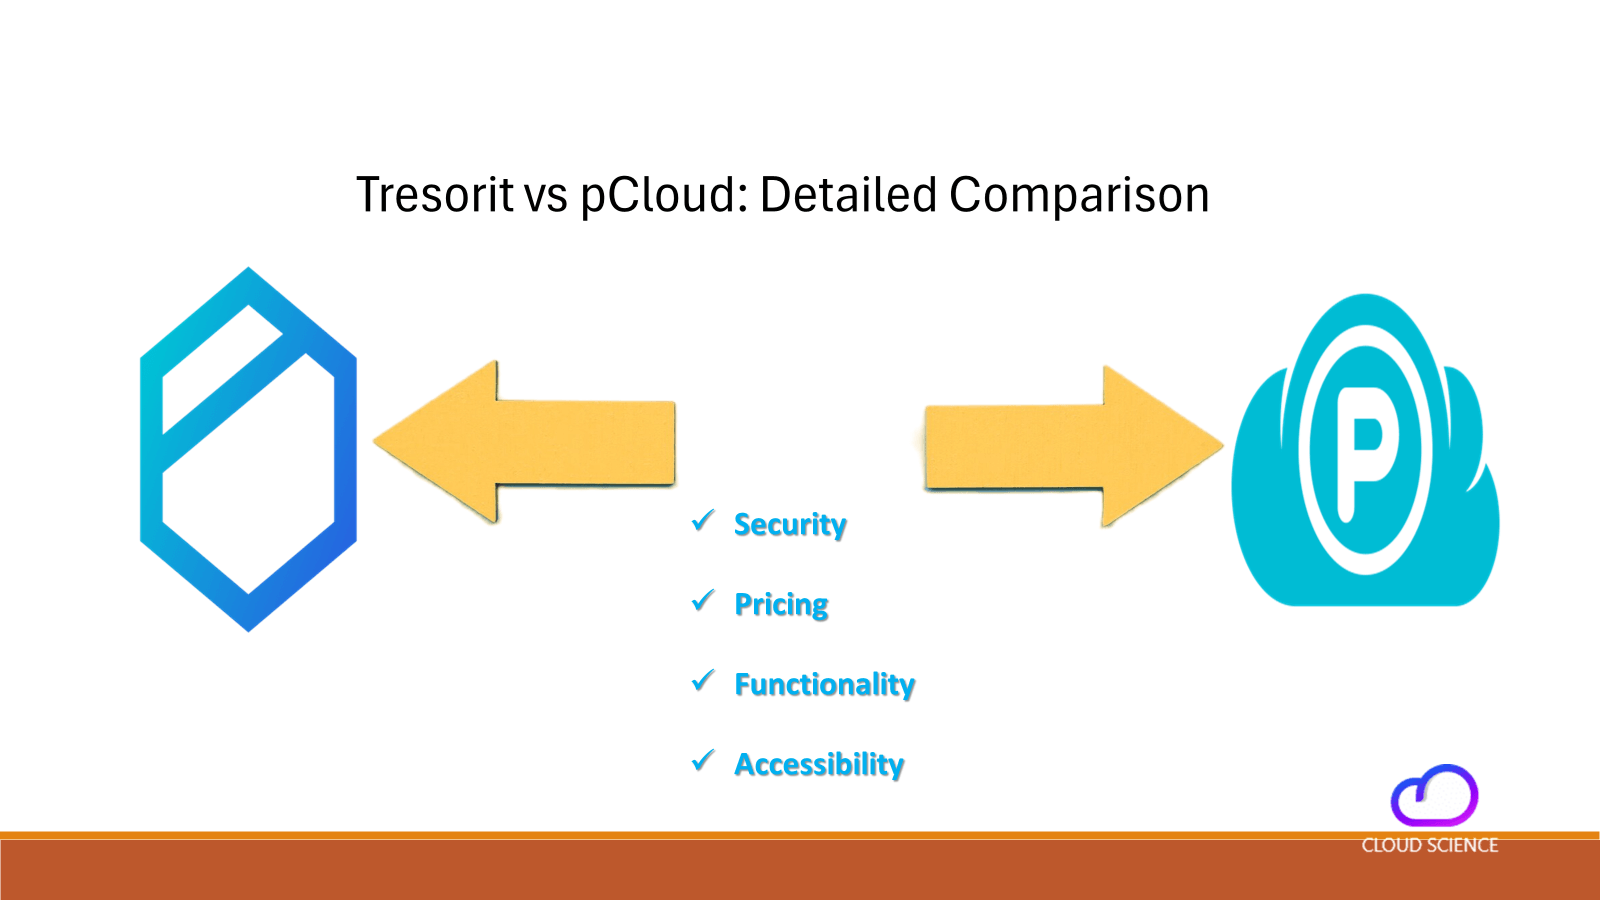 Tresorit vs pCloud detailed comparison